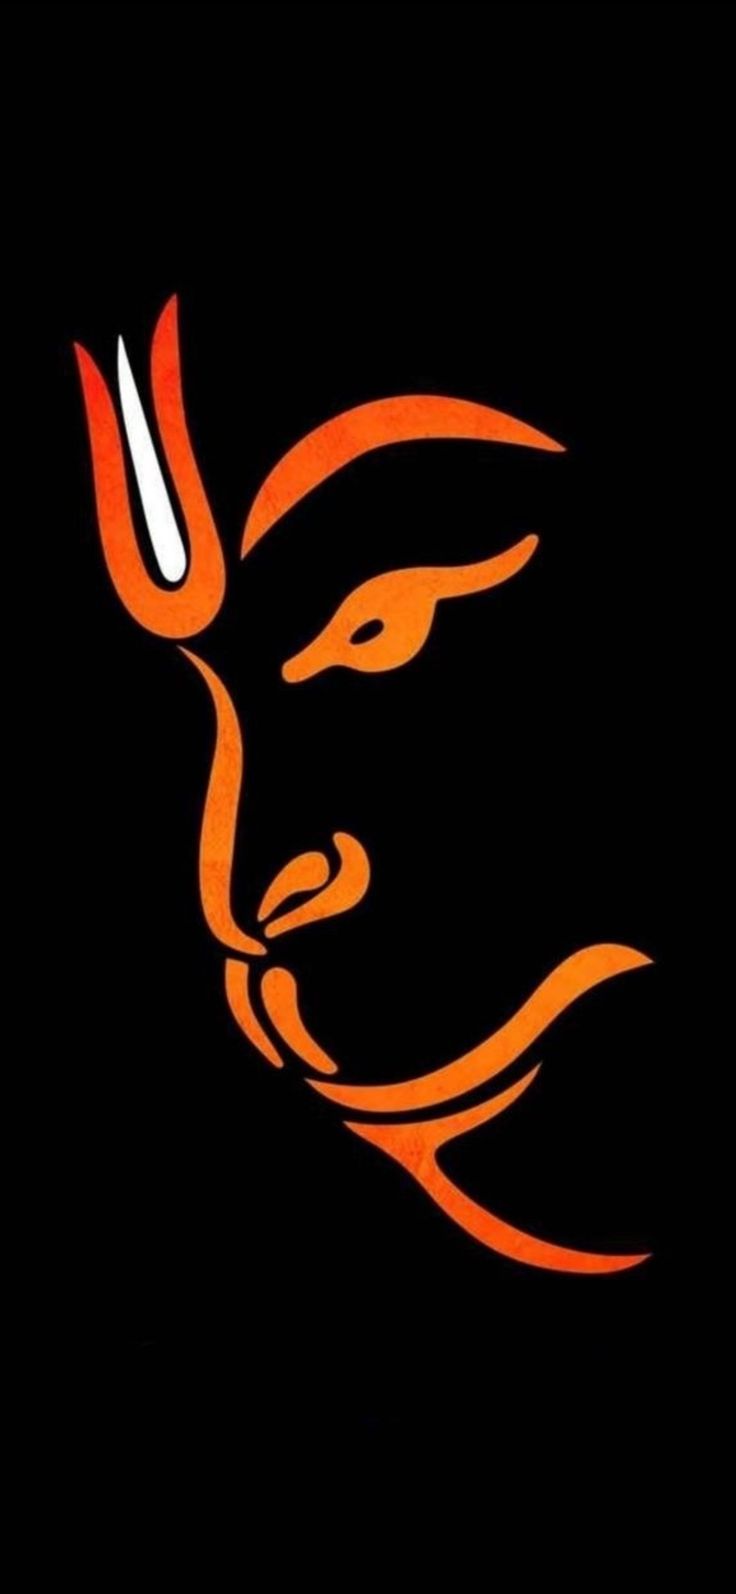 Hanuman Phone Wallpapers - Top Free Hanuman Phone Backgrounds ...